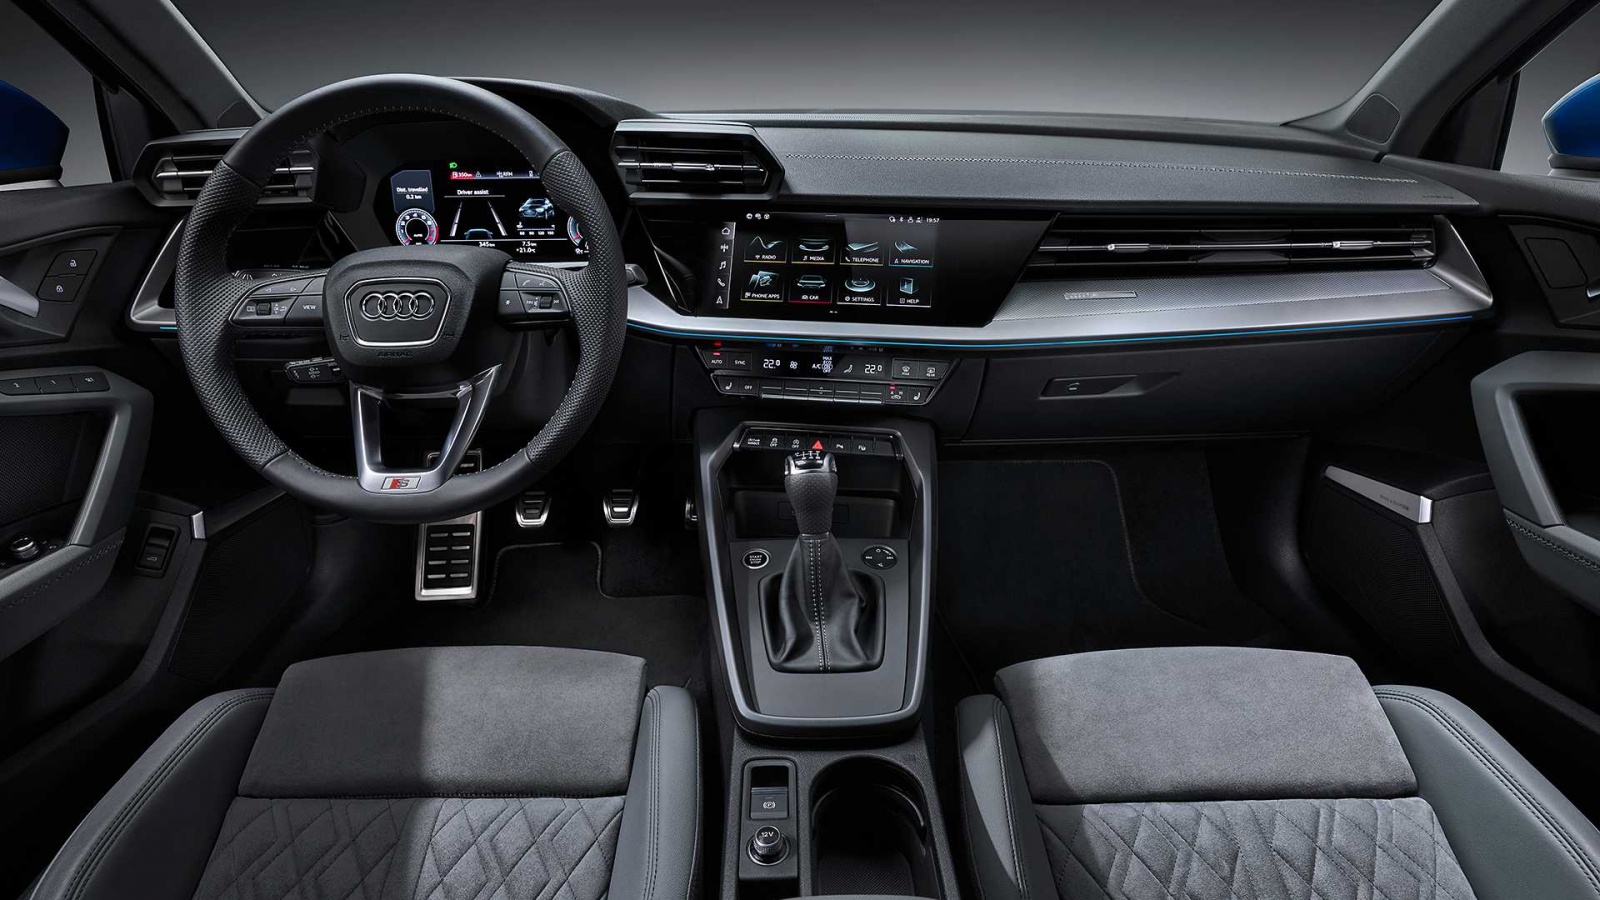 Картинки по запросу "Audi A3 2020"